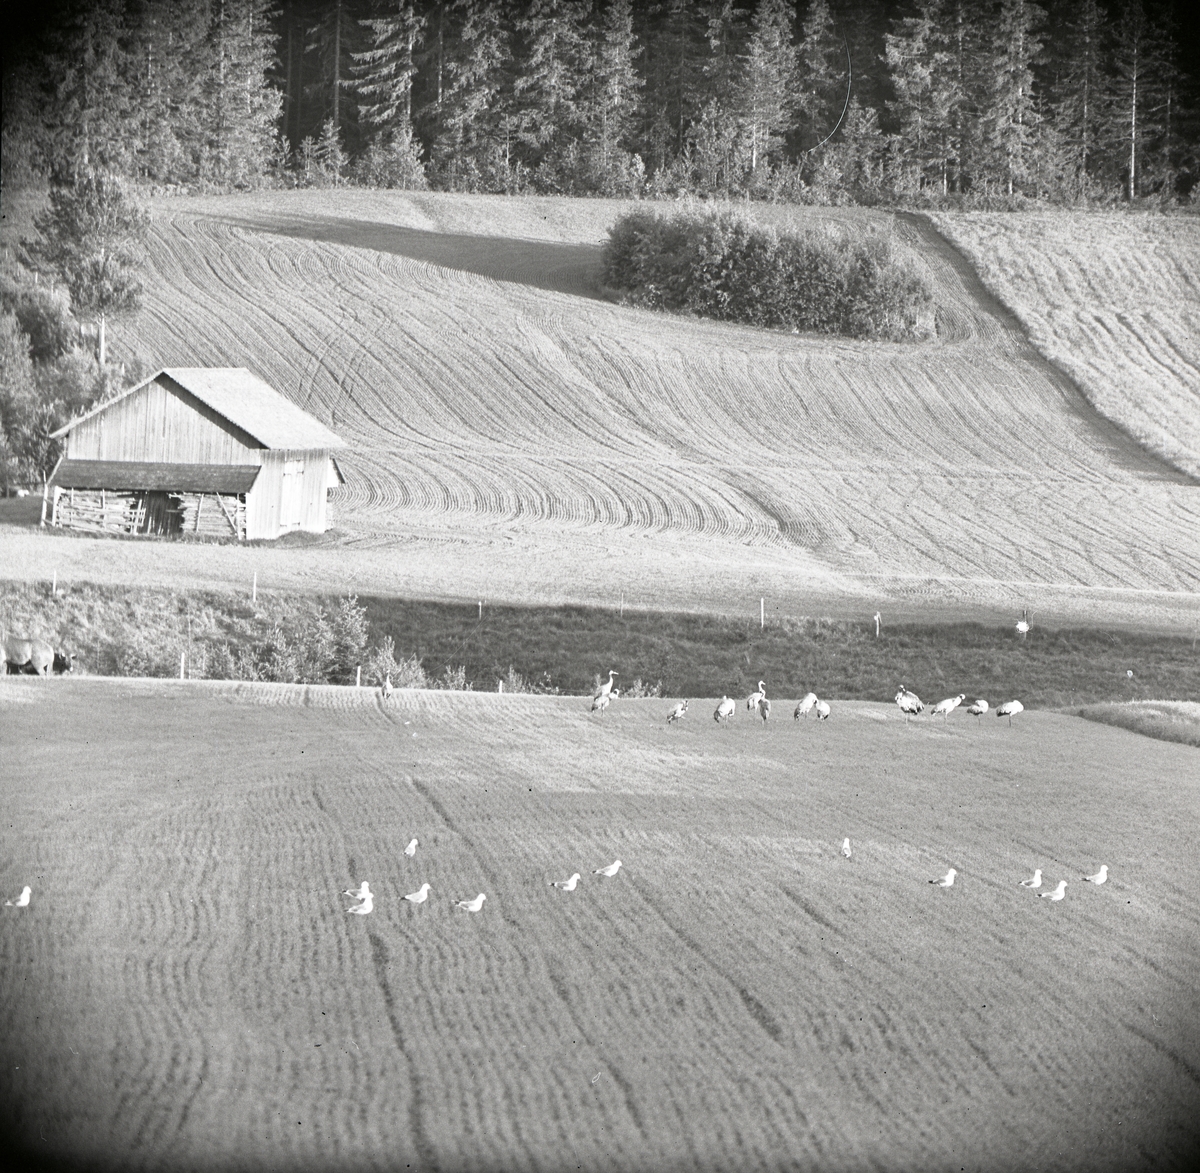 Tranor och måsar på åkermark med hus och skog i bakgrunden, juni 1962.